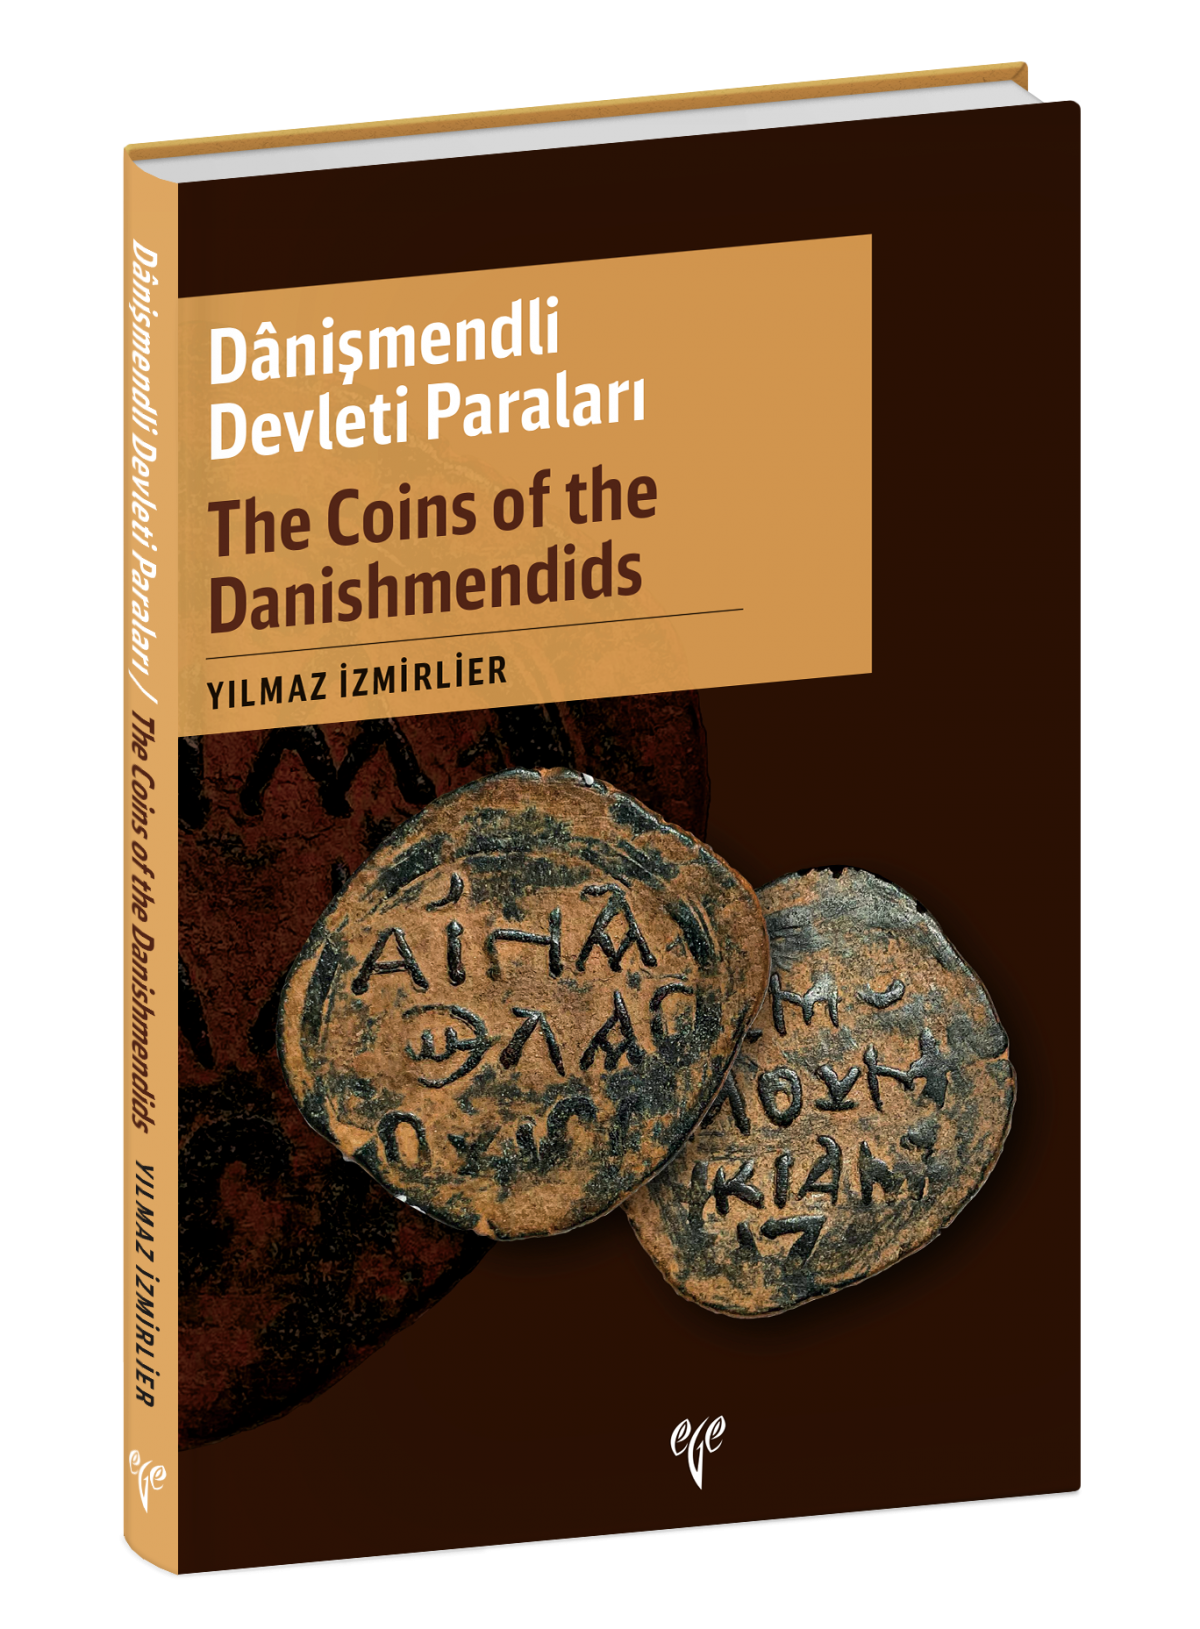 The Coins of the Danishmendids / Danismendli Devleti Paralari